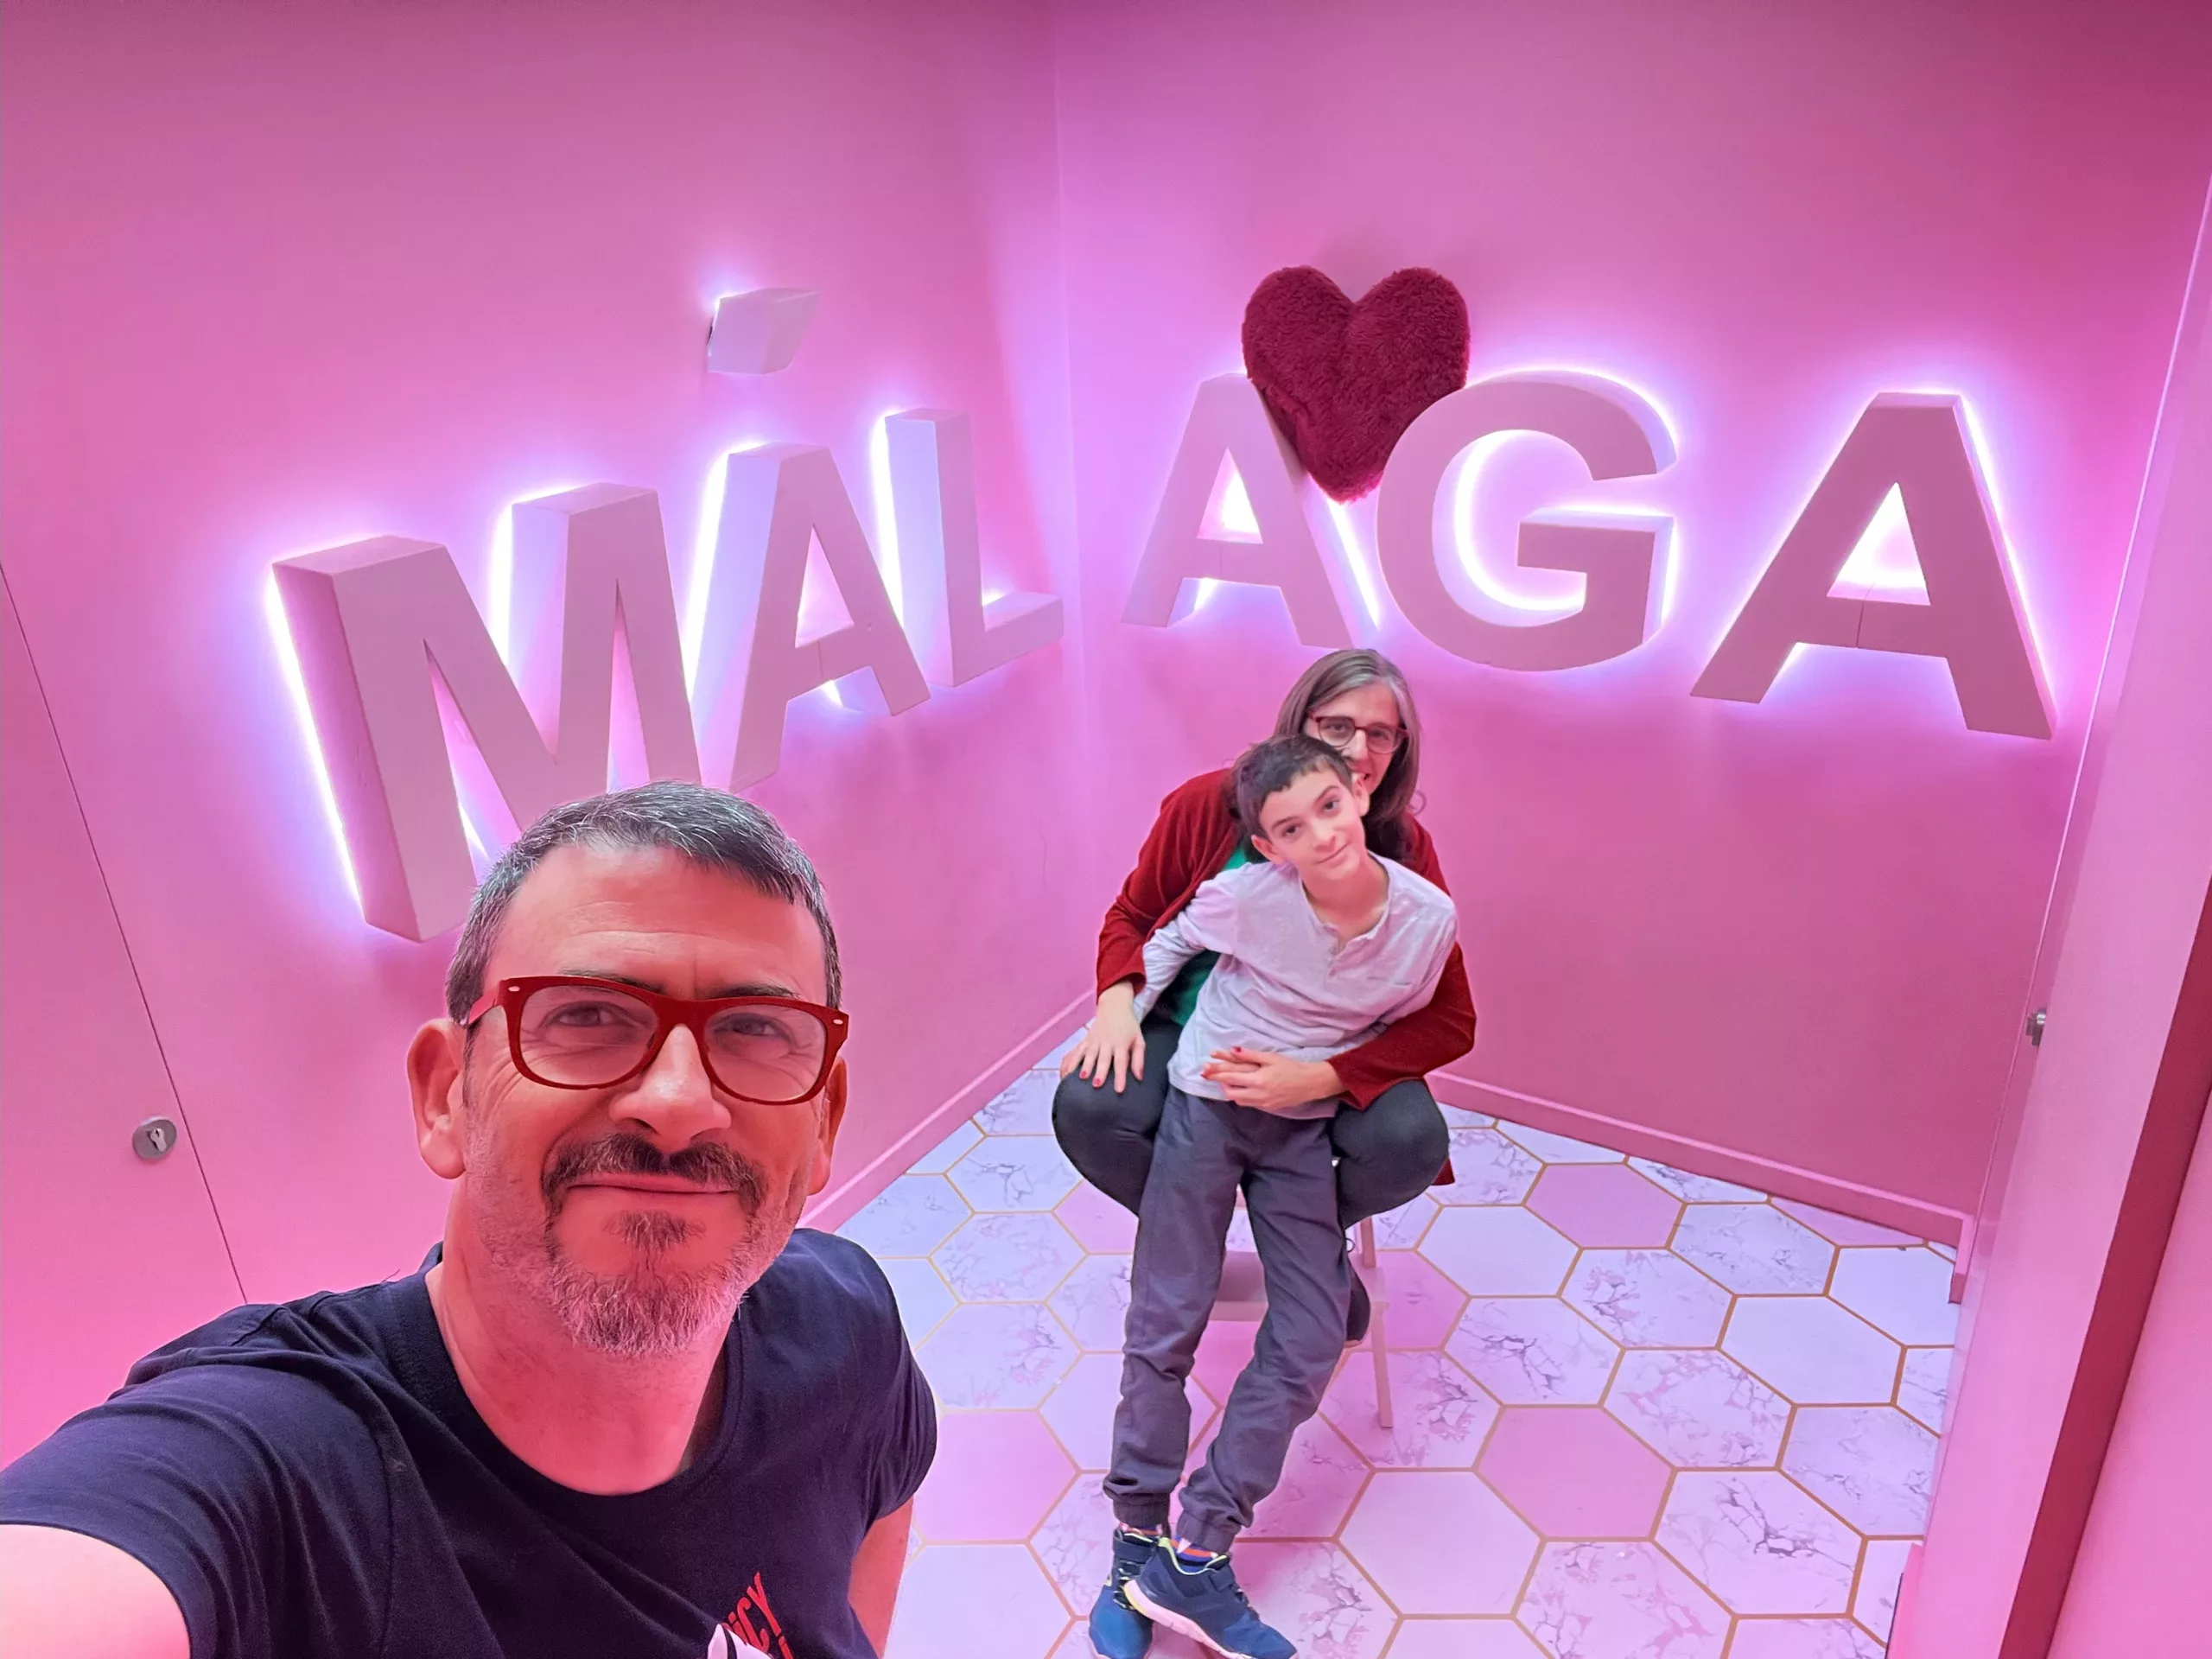 Cliché Selfie Málaga